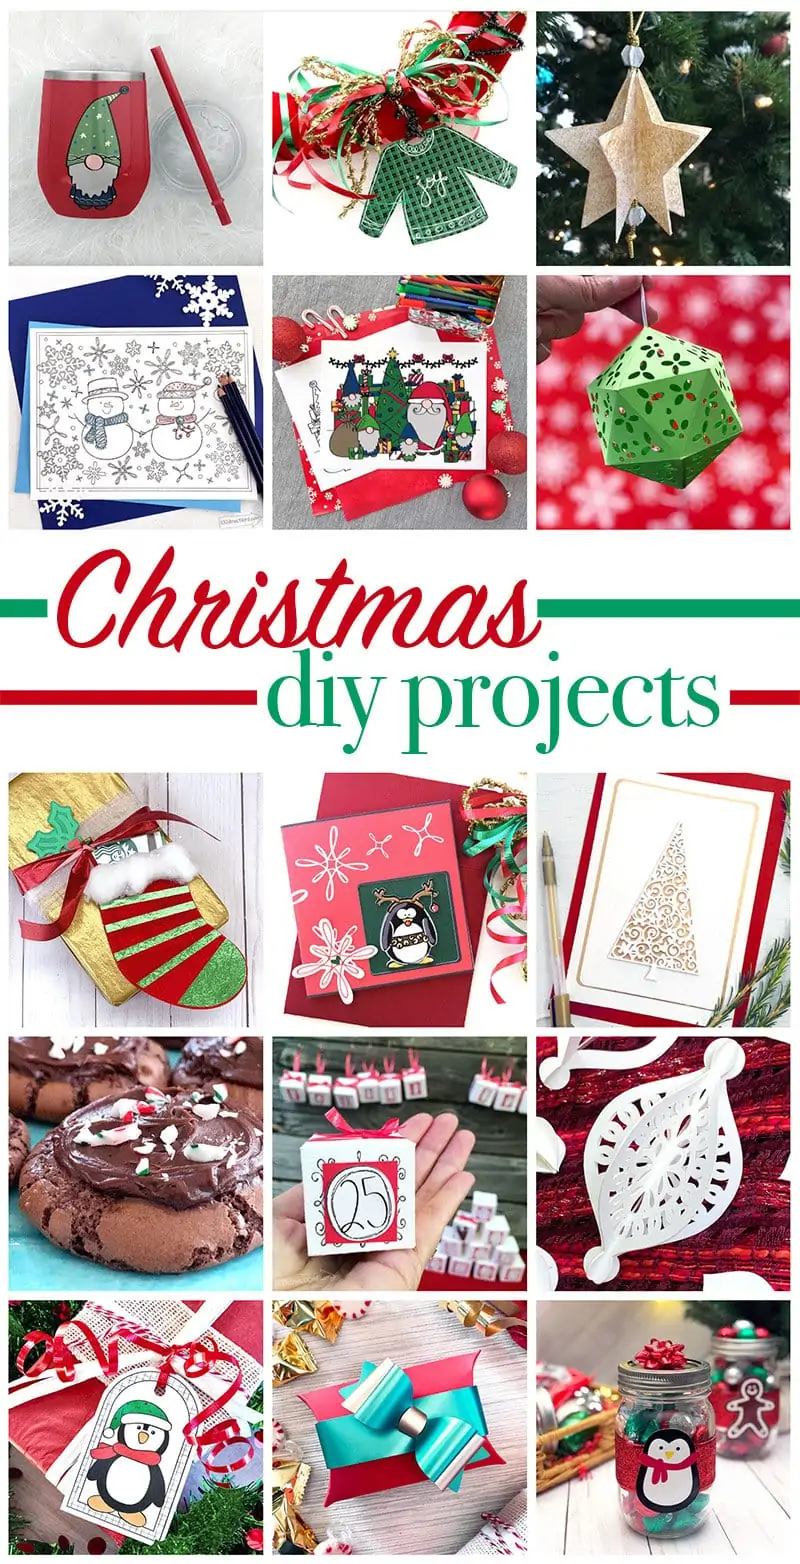 Christmas diy project ideas